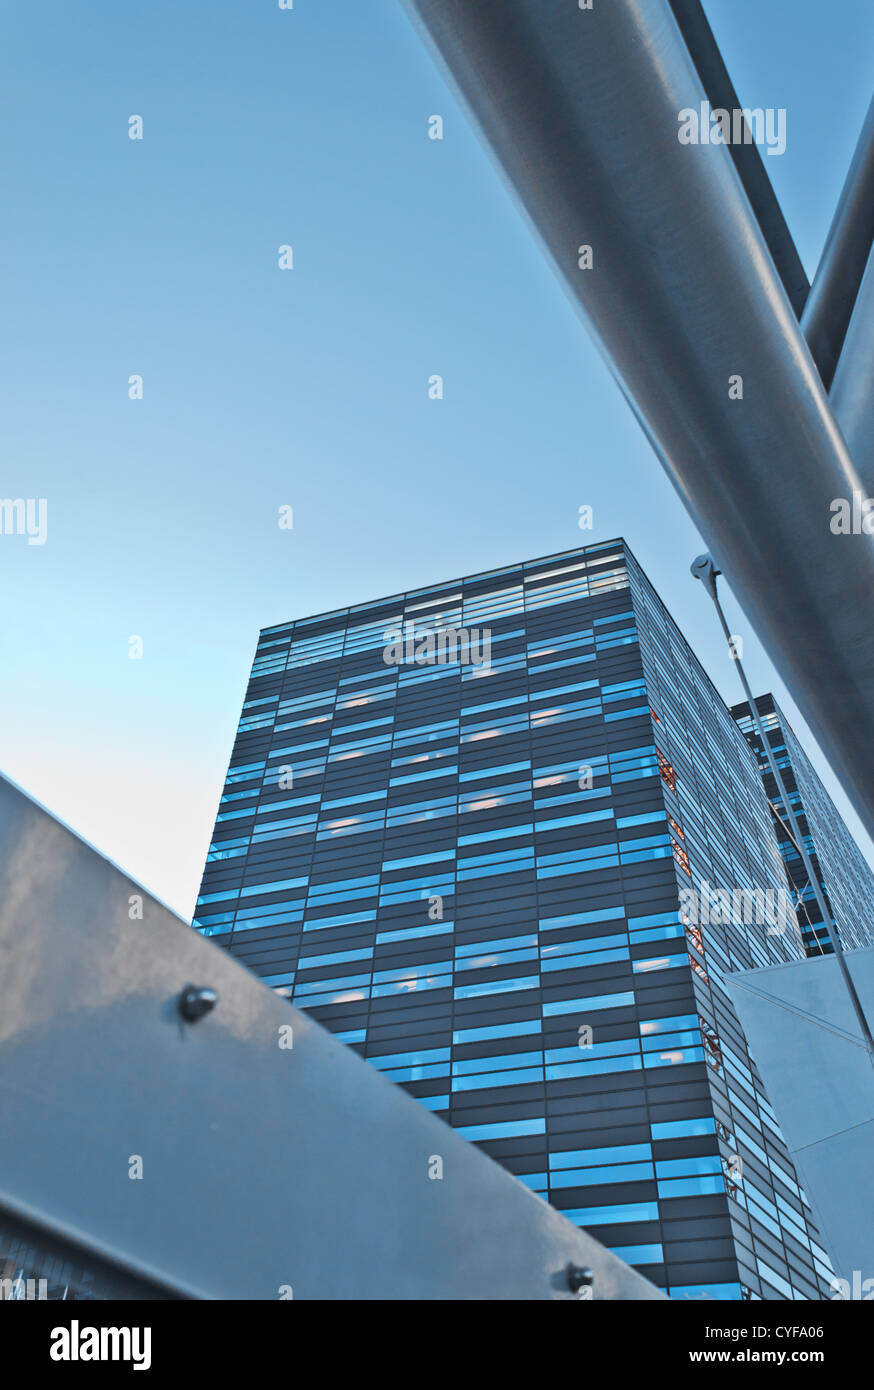 Mur de verre gratte-ciel moderne Oslo Norvège Banque D'Images